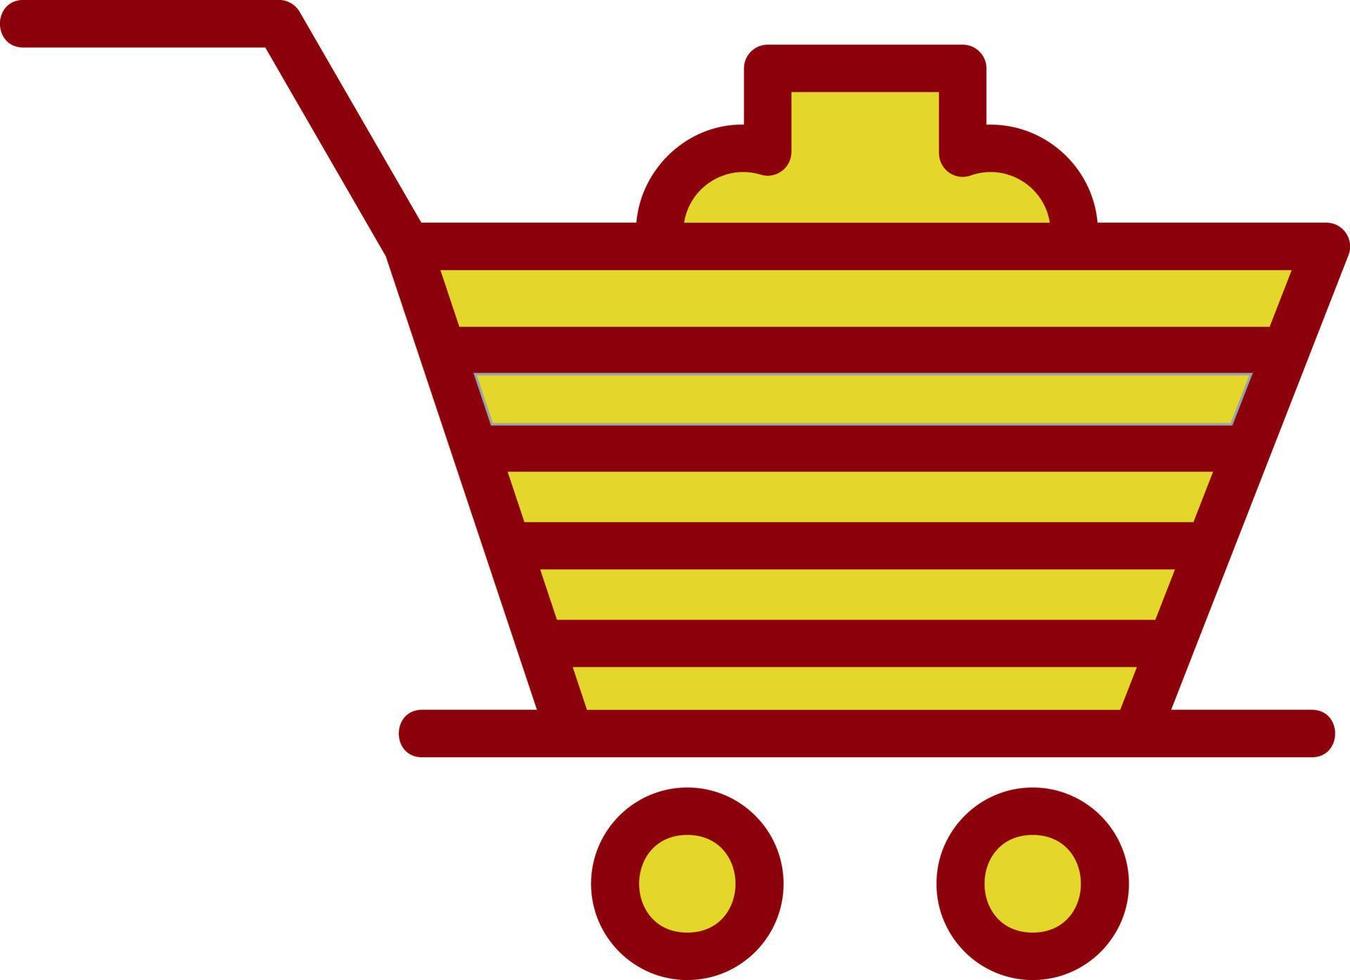 diseño de icono de vector de carrito de compras